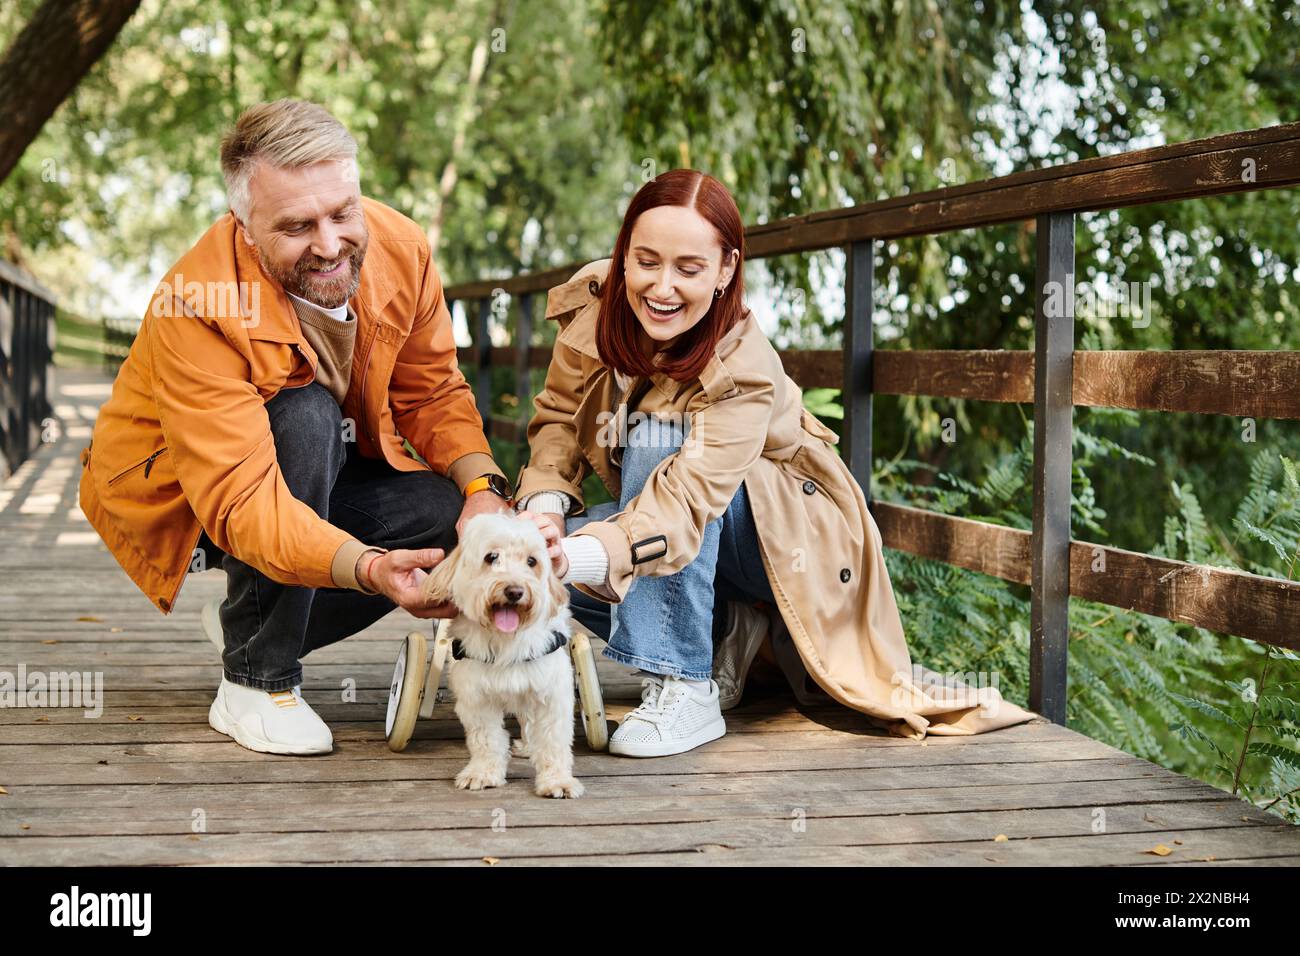 Ein Mann und eine Frau in lässiger Kleidung streicheln gern einen Hund auf einer Brücke im Park. Stockfoto